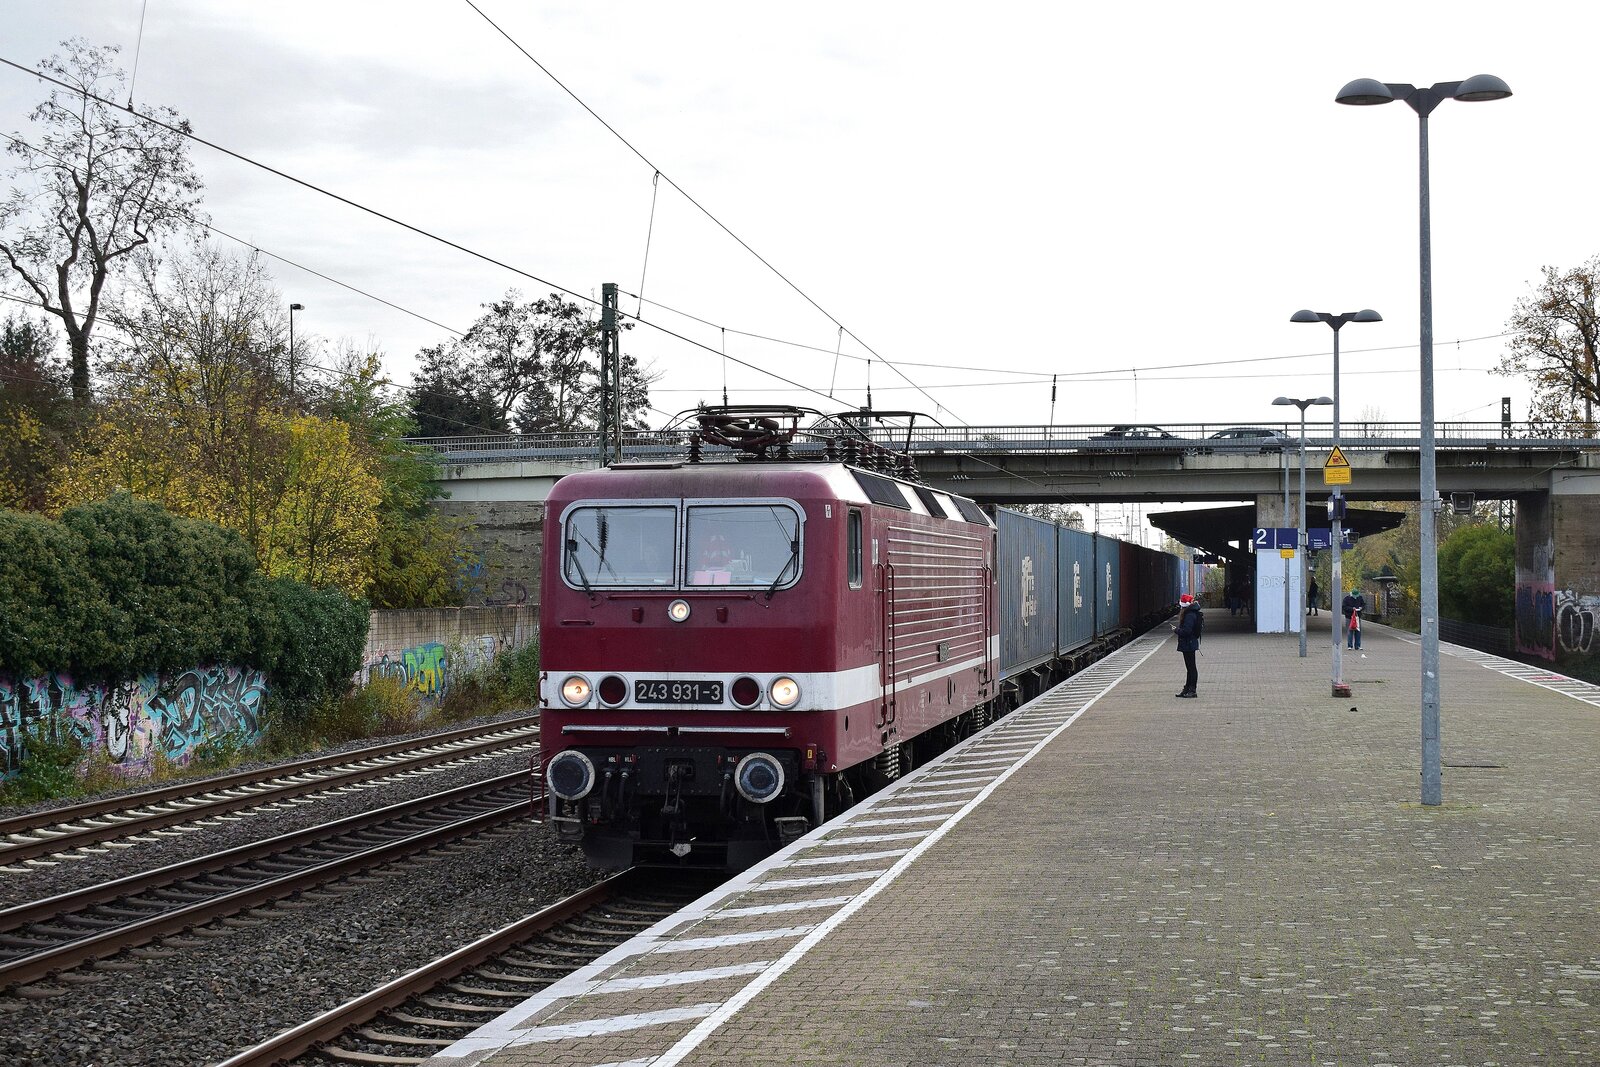 Unverhofft kommt oft. Überraschend kam 143 931 mit einem Containerzug über die S-Bahngleise von Düsseldorf nach Duisburg durch Angermund gefahren.

Angermund 26.11.2022